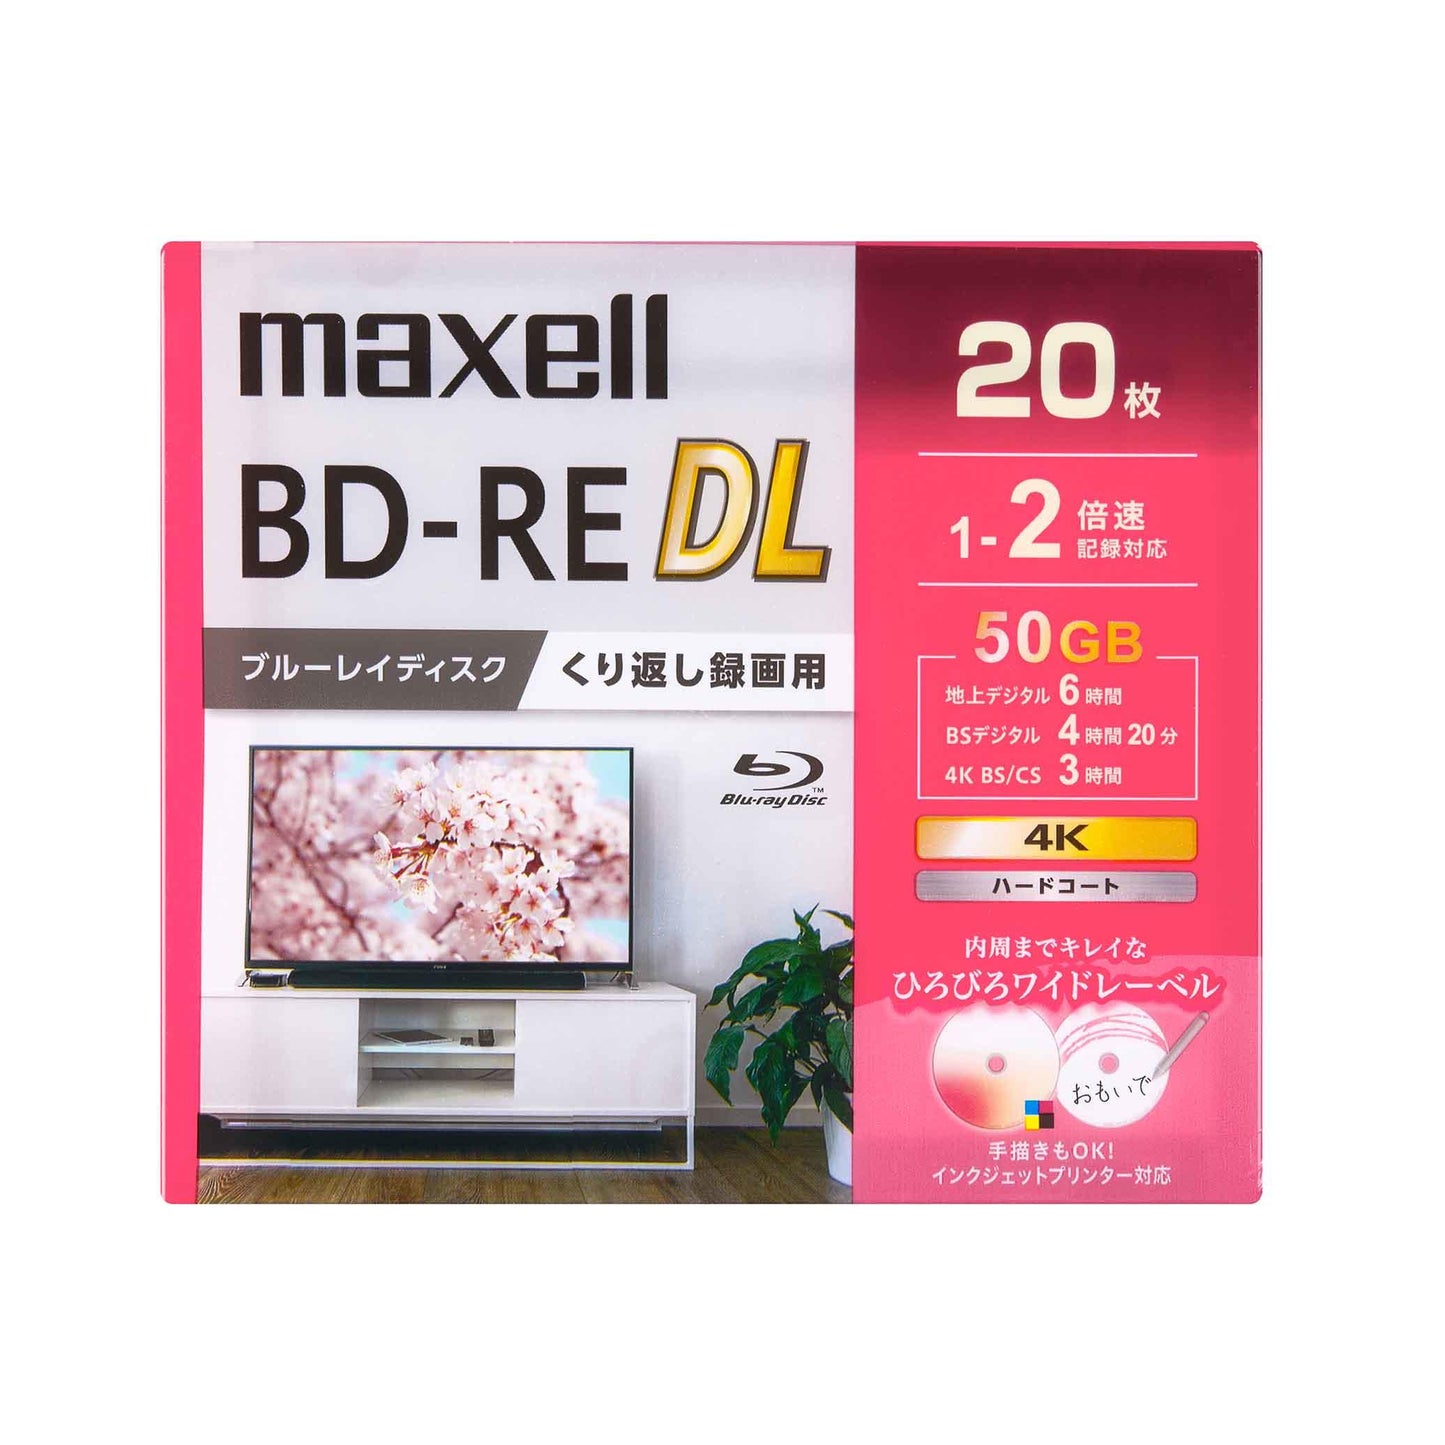 マクセル 録画用 ブルーレイディスク BD-RE DL ひろびろワイドレーベルディスク (1～2倍速記録対応) 20枚入り BEV50WPG.20S